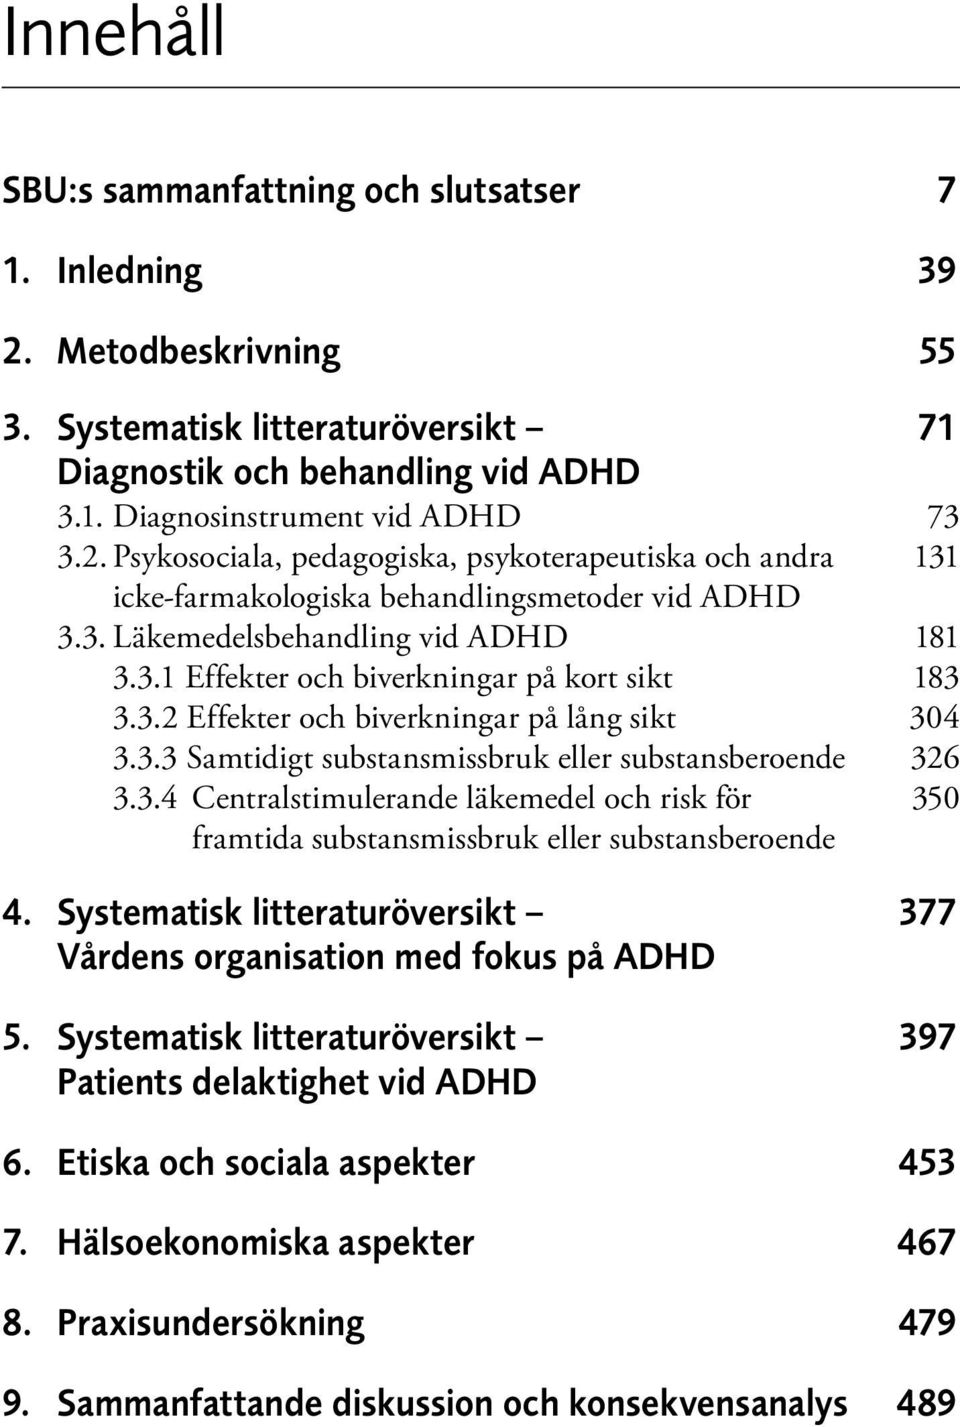 Systematisk litteraturöversikt 377 Vårdens organisation med fokus på ADHD 5. Systematisk litteraturöversikt 397 Patients delaktighet vid ADHD 6. Etiska och sociala aspekter 453 7.